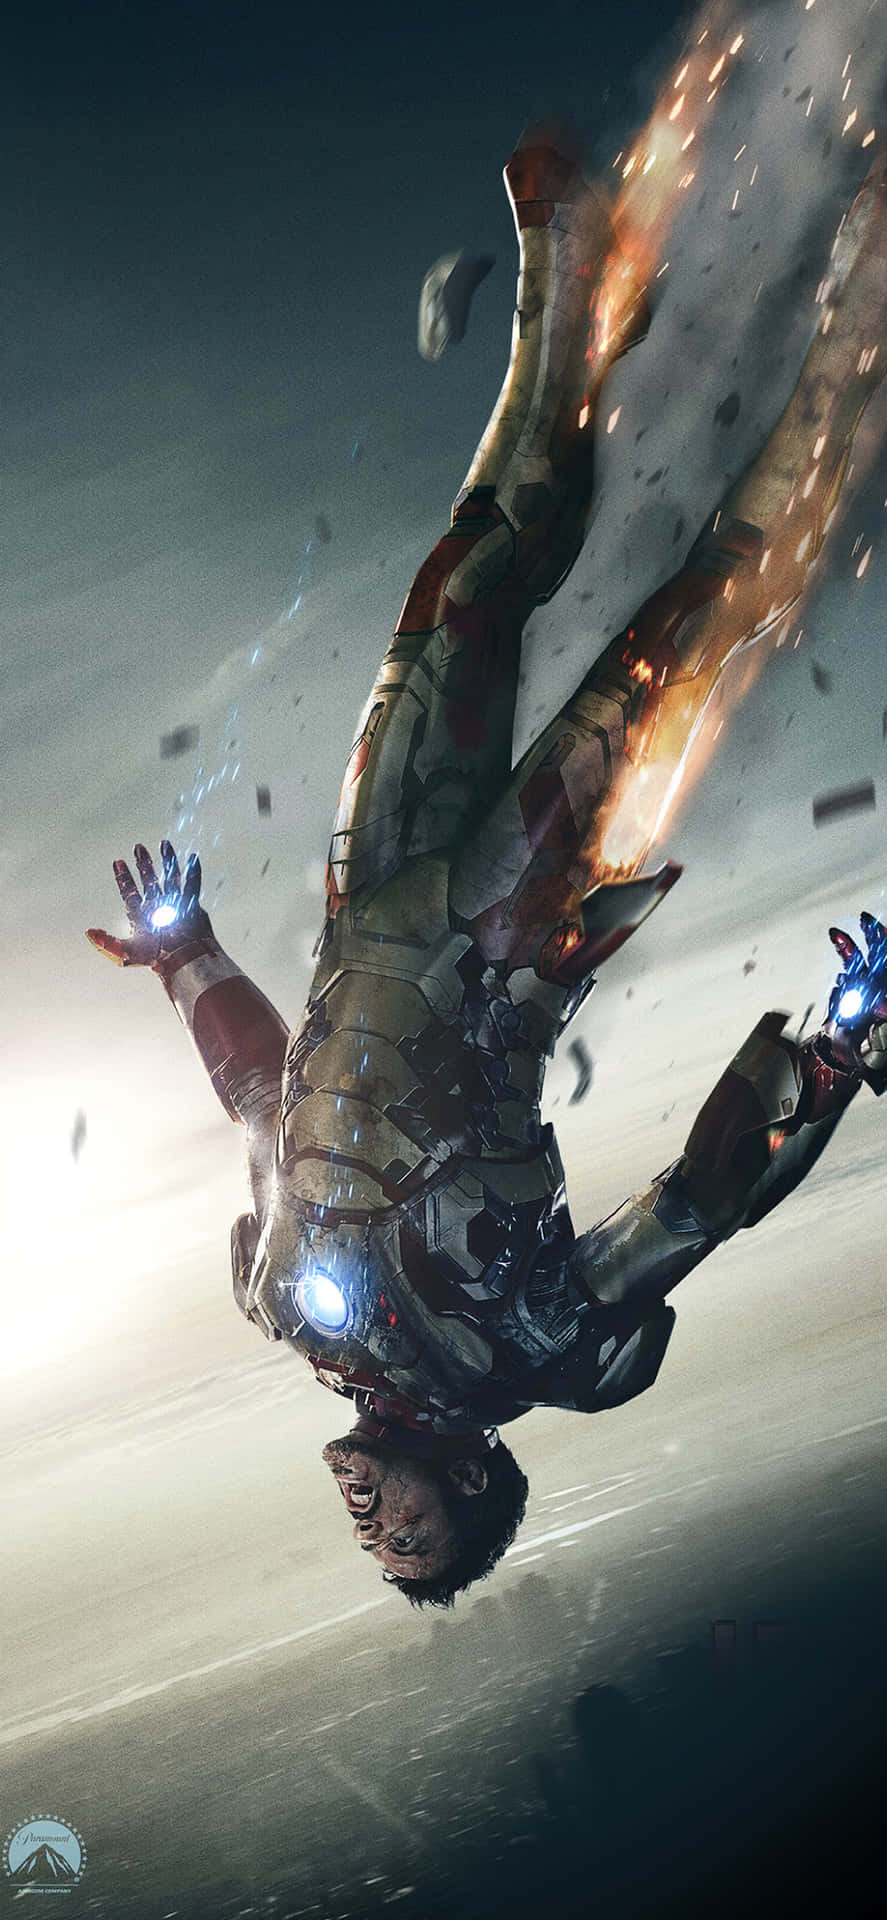 Iron Man 3 - Avengers - Hd Wallpaper Wallpaper